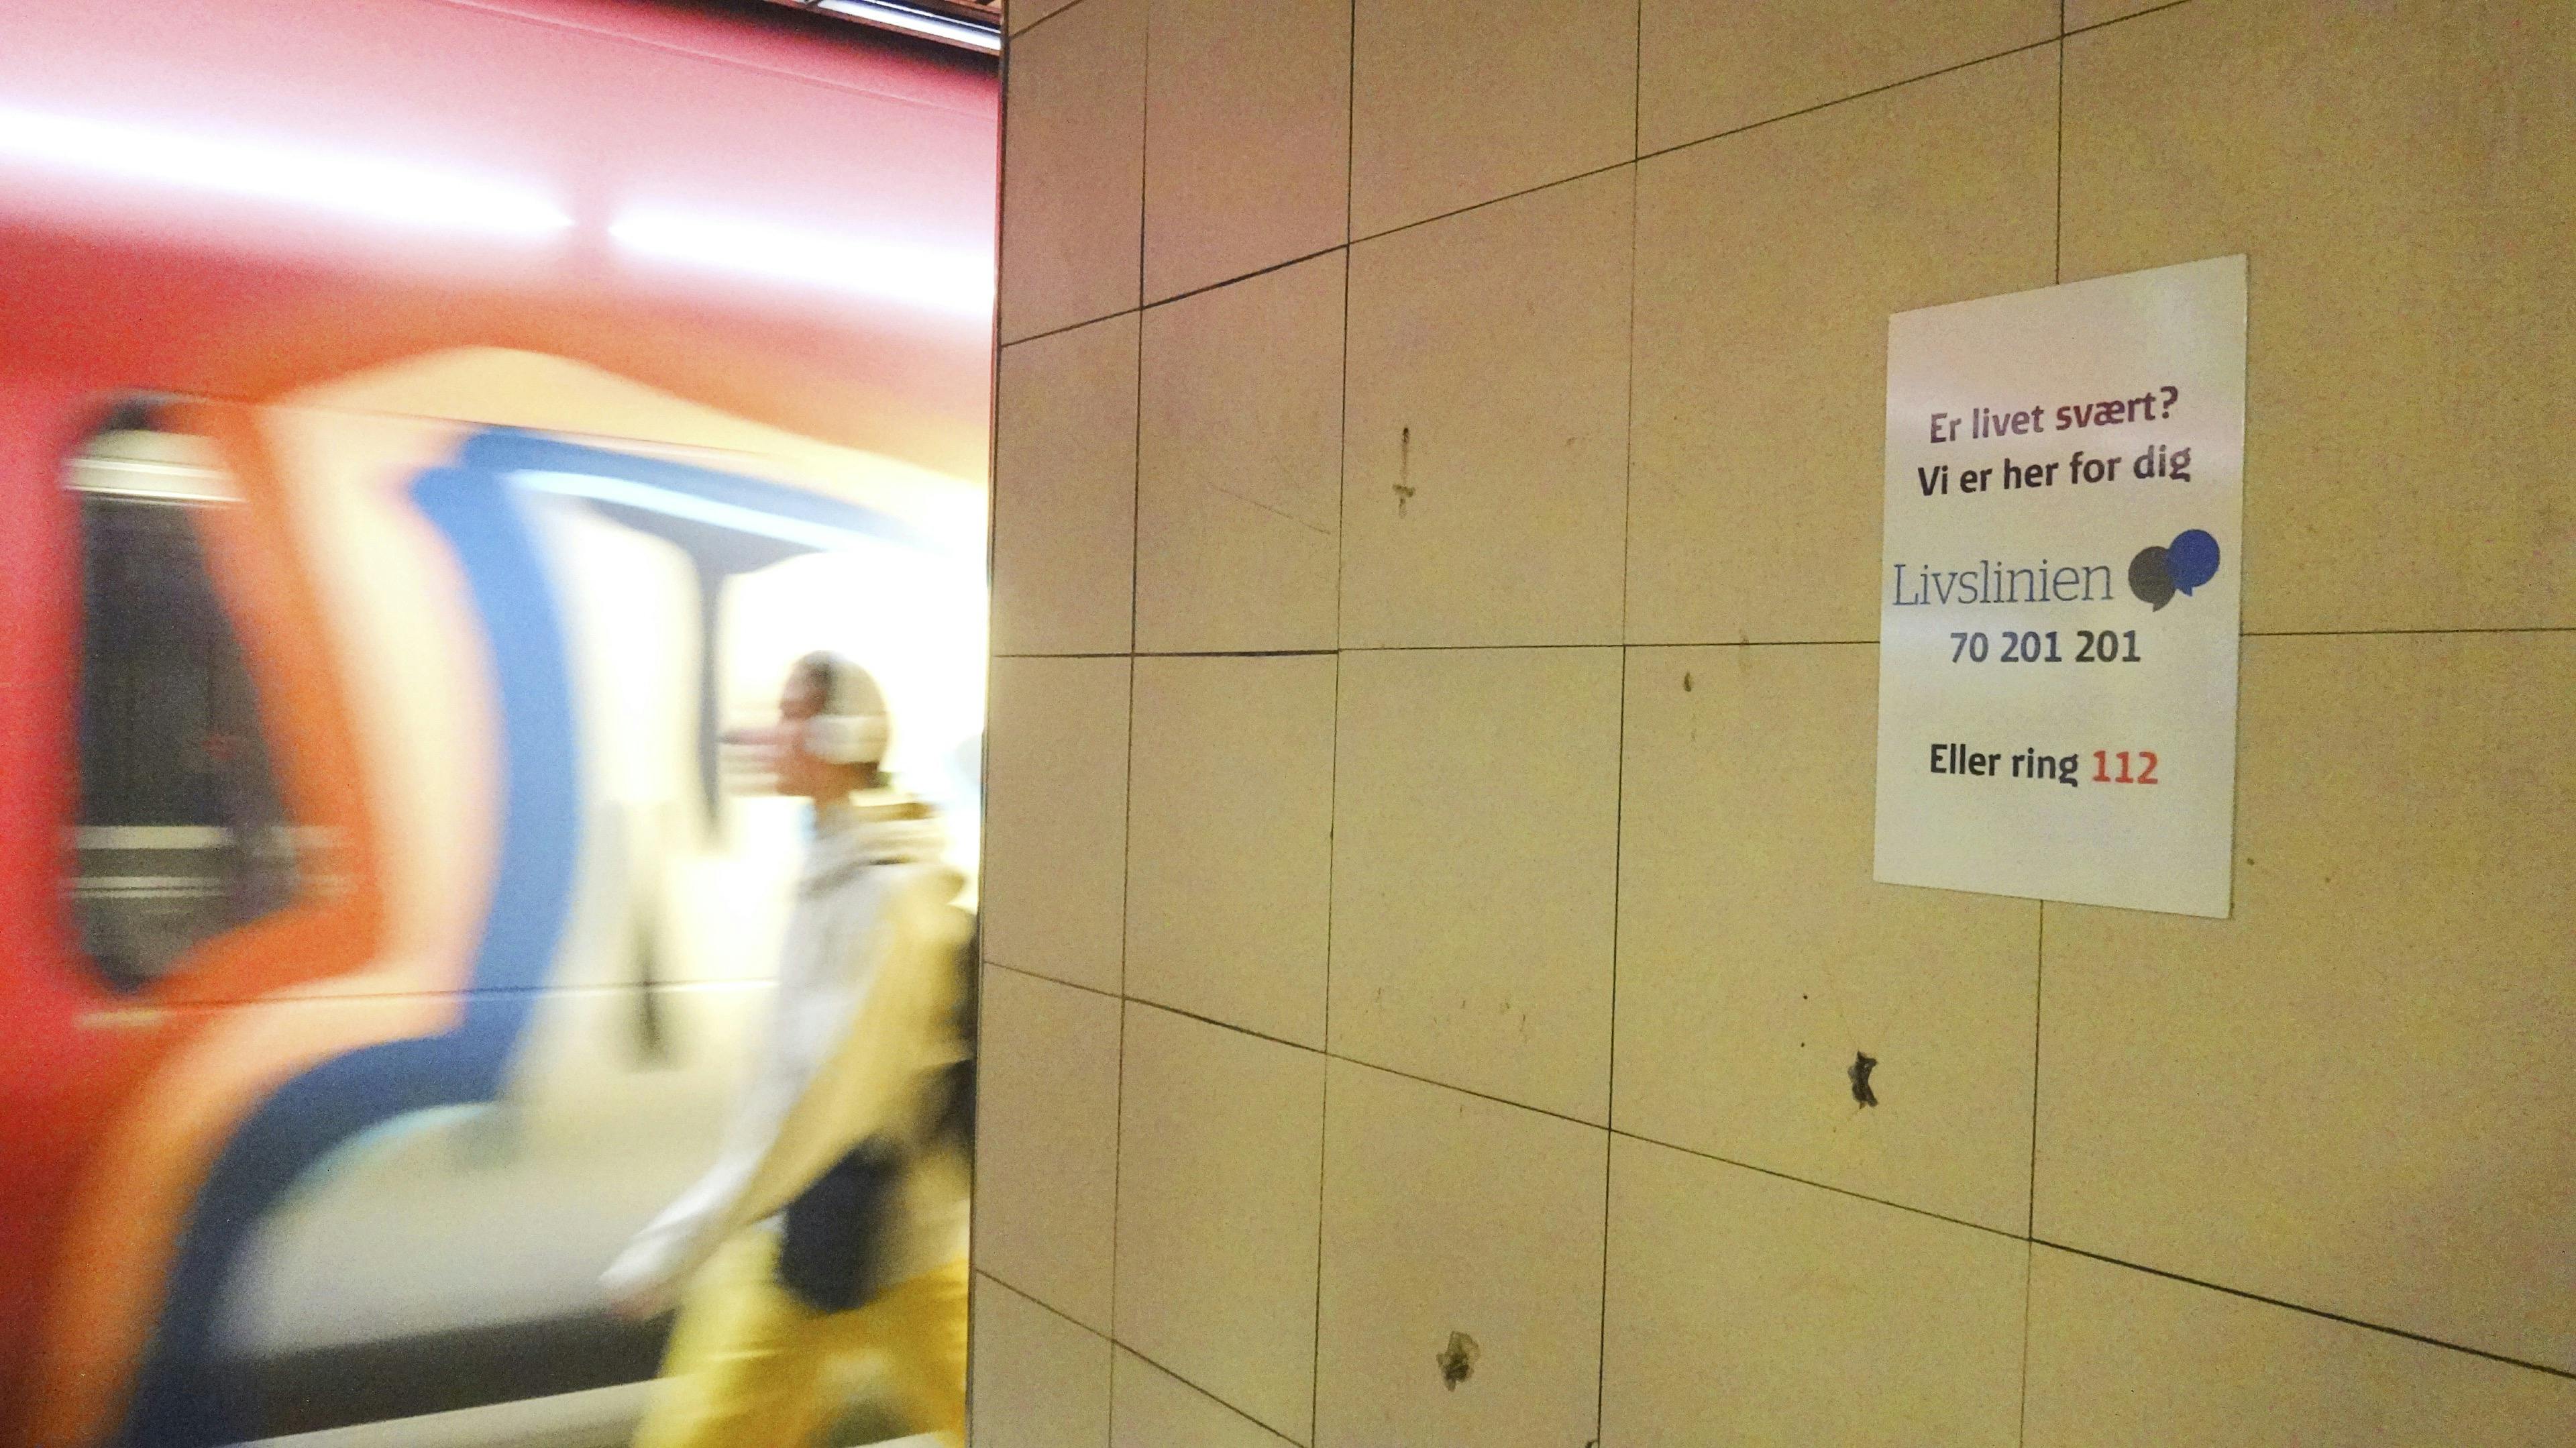 På 15 togstationer rundt om i landet, hænger nu skilte der skal forebygge selvmord med teksten: "Er livet svært? Vi er her for dig." Foto: Livslinien 